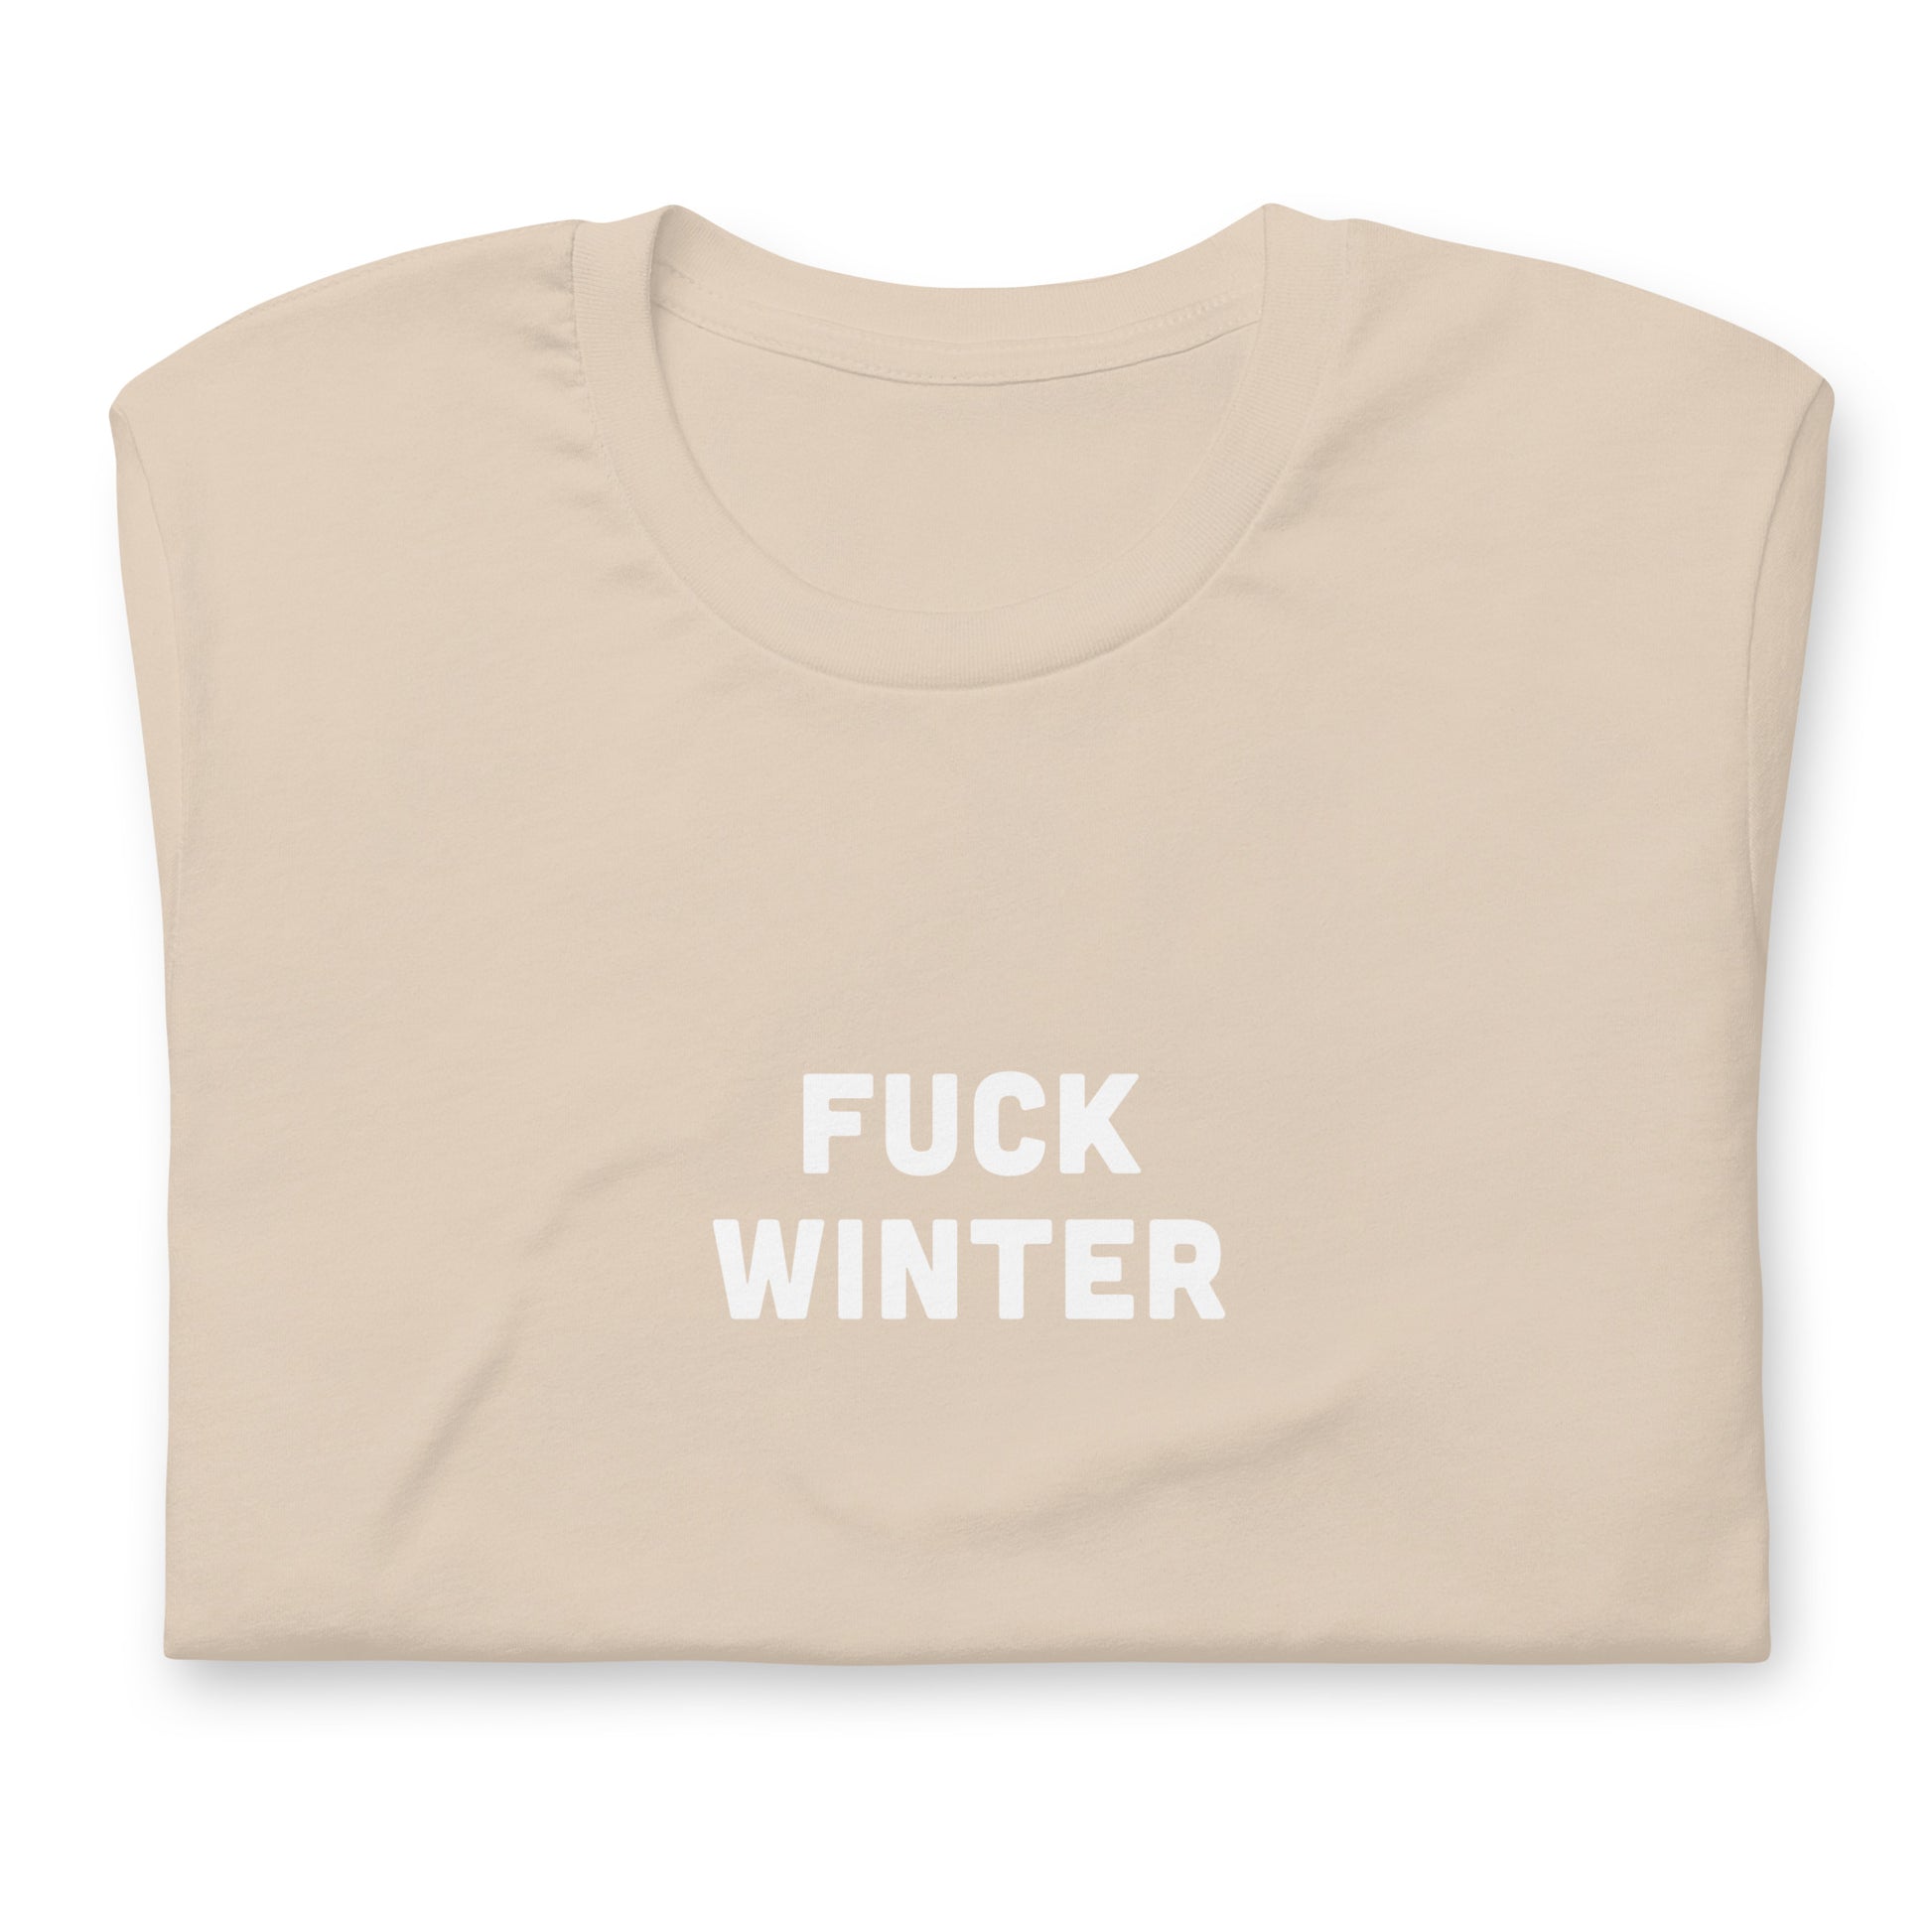 Fuck Winter T-Shirt Size L Color Asphalt